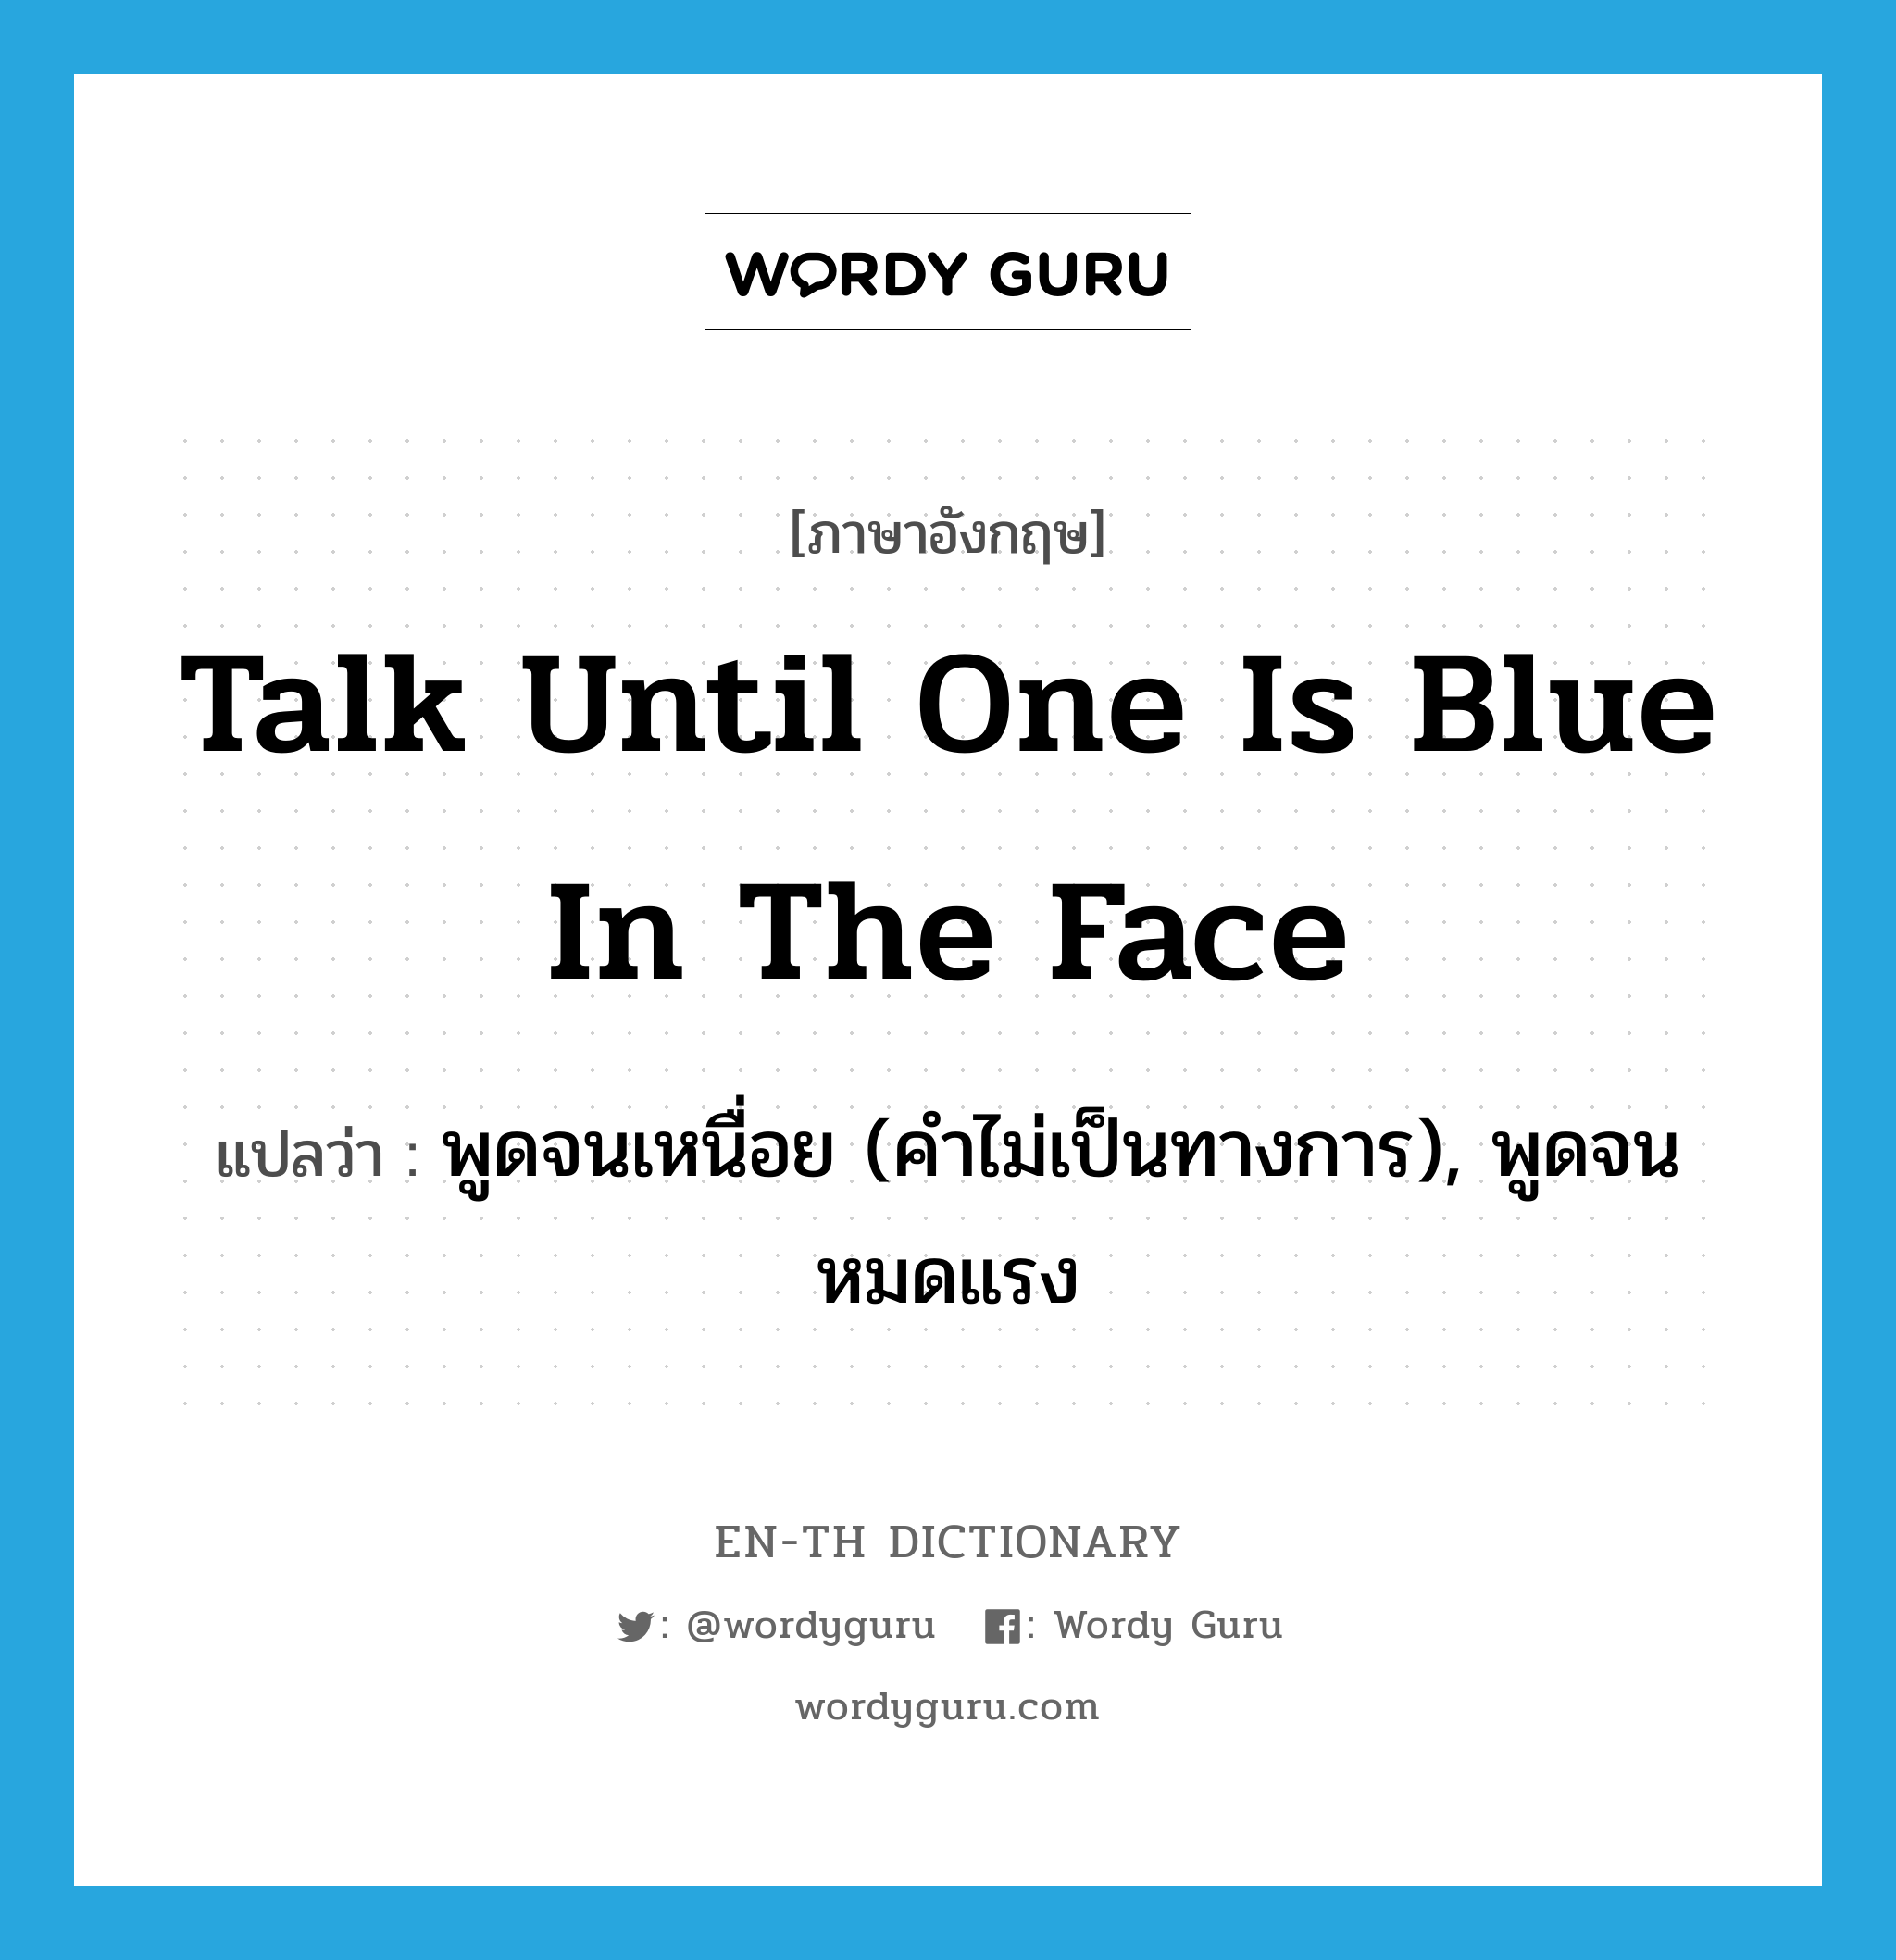 พูดจนเหนื่อย (คำไม่เป็นทางการ), พูดจนหมดแรง ภาษาอังกฤษ?, คำศัพท์ภาษาอังกฤษ พูดจนเหนื่อย (คำไม่เป็นทางการ), พูดจนหมดแรง แปลว่า talk until one is blue in the face ประเภท IDM หมวด IDM